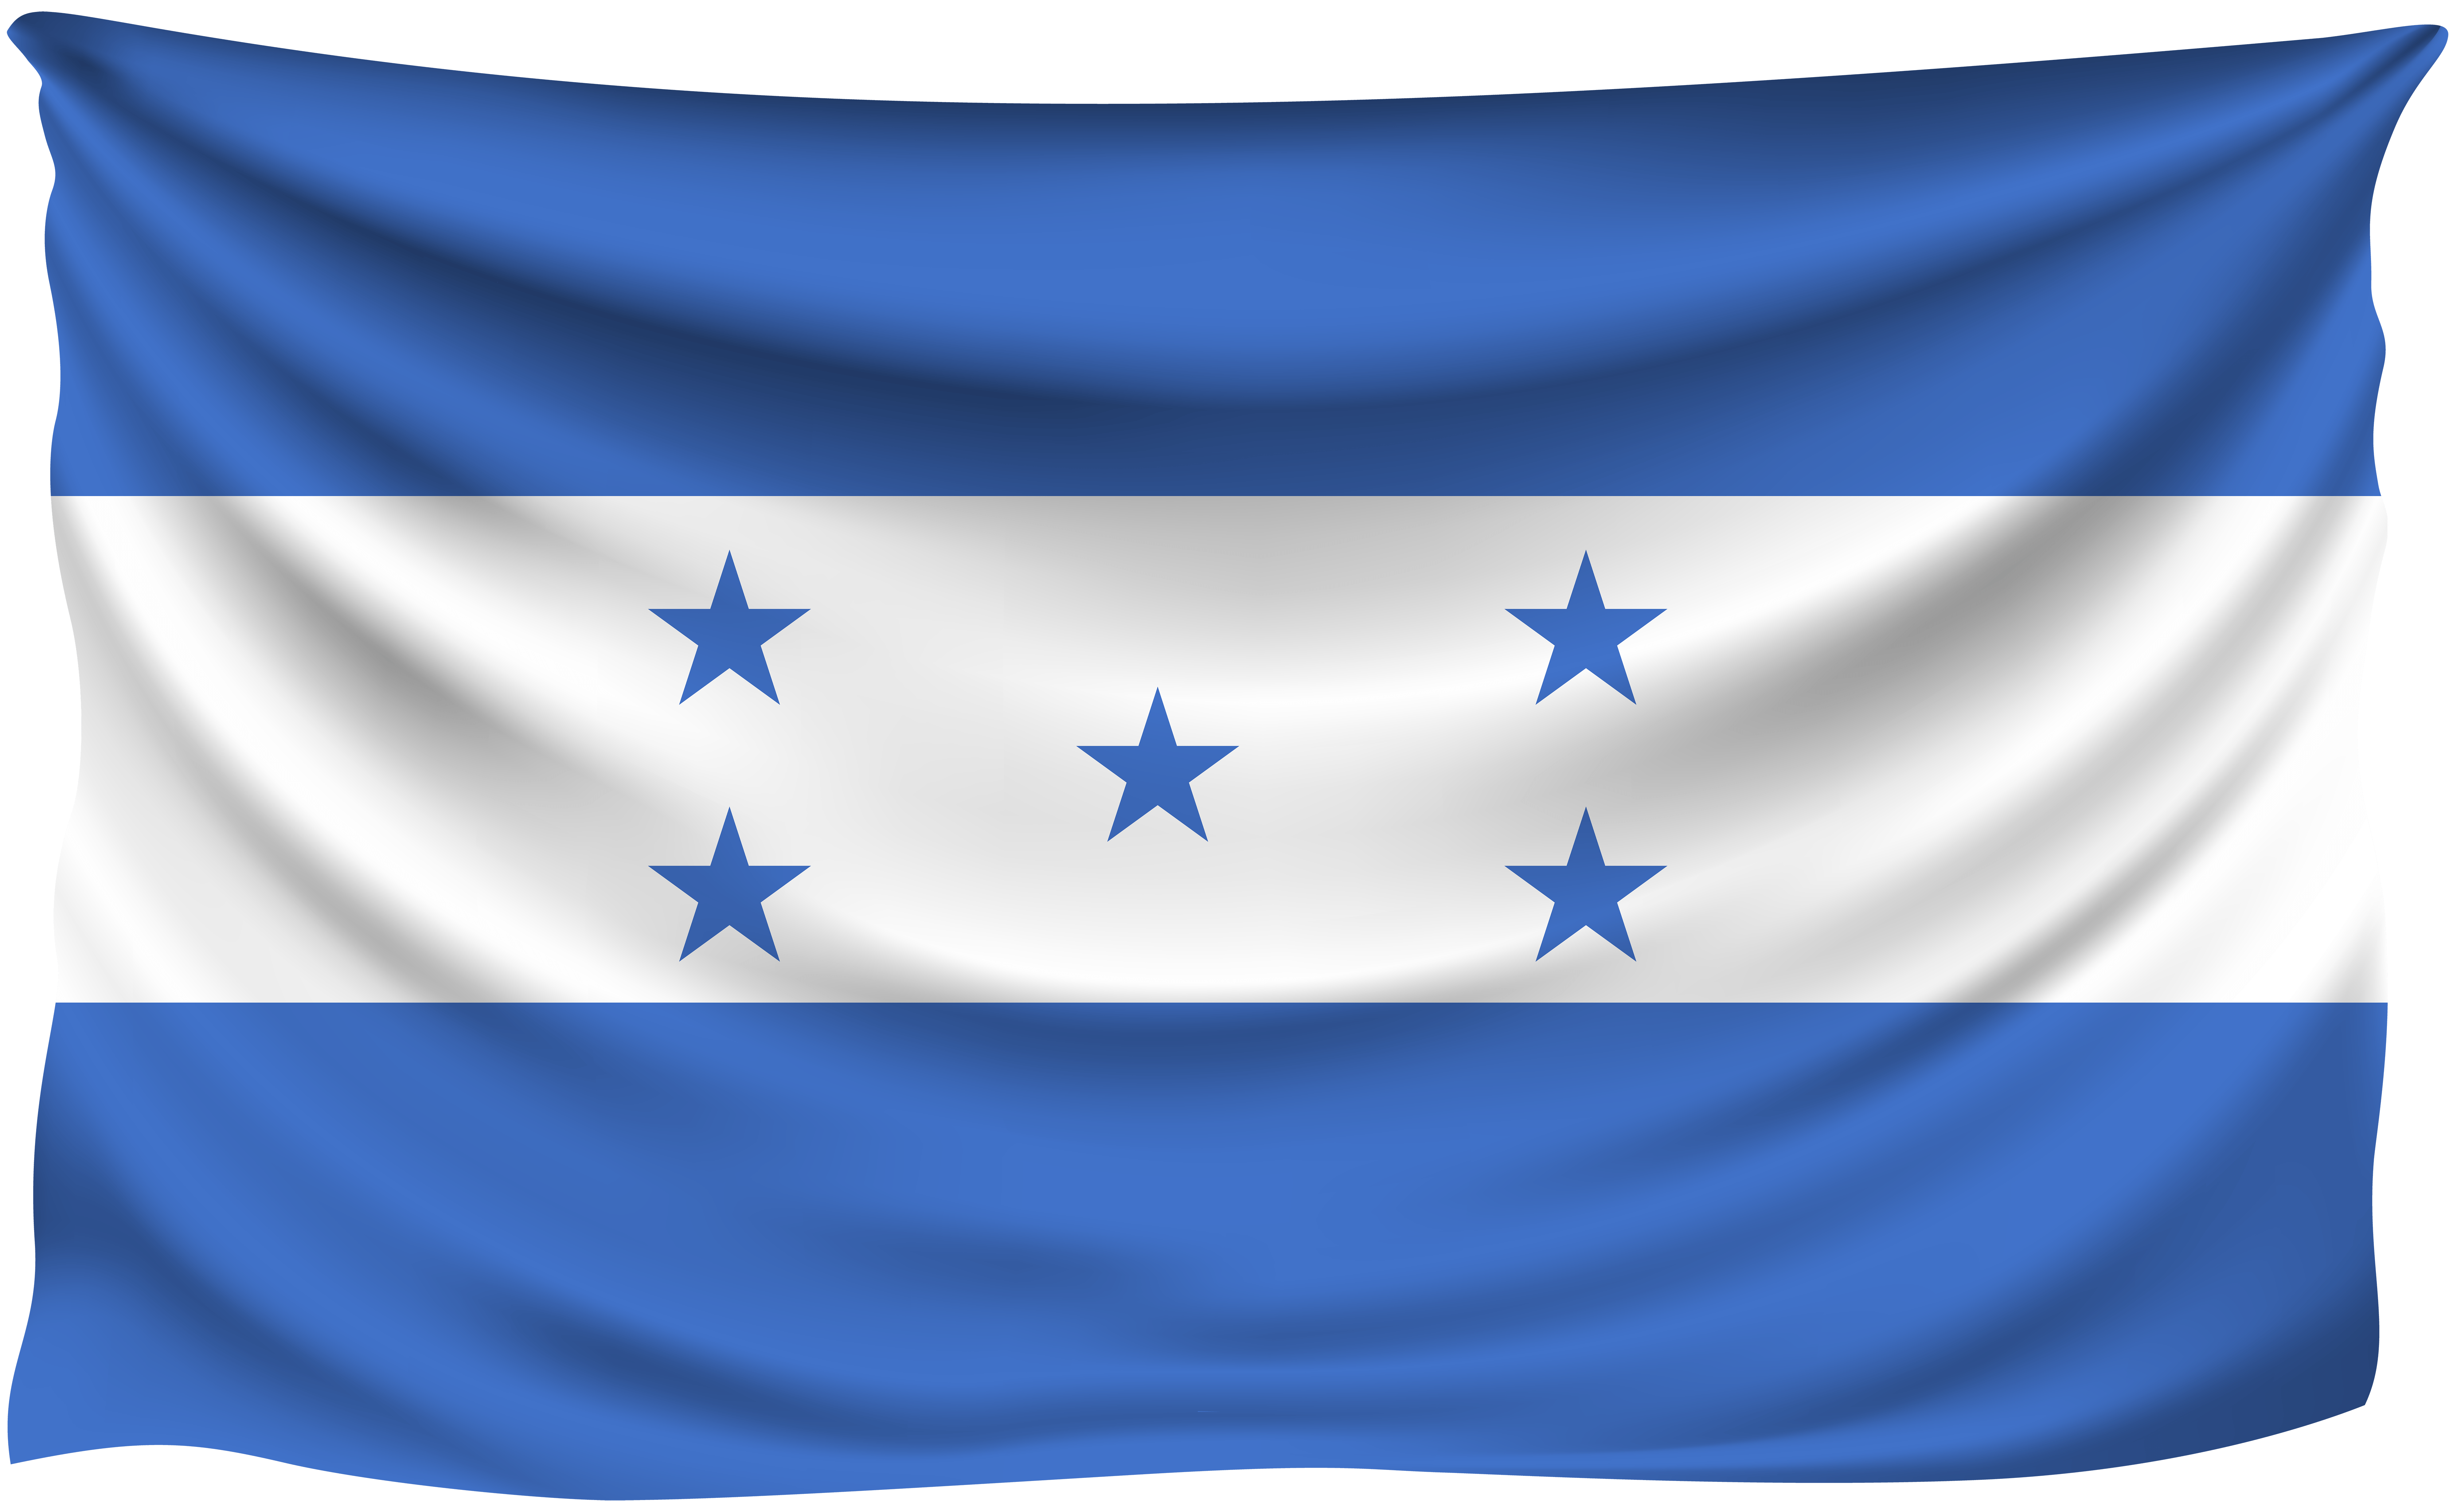 Honduras Wrinkled Flag